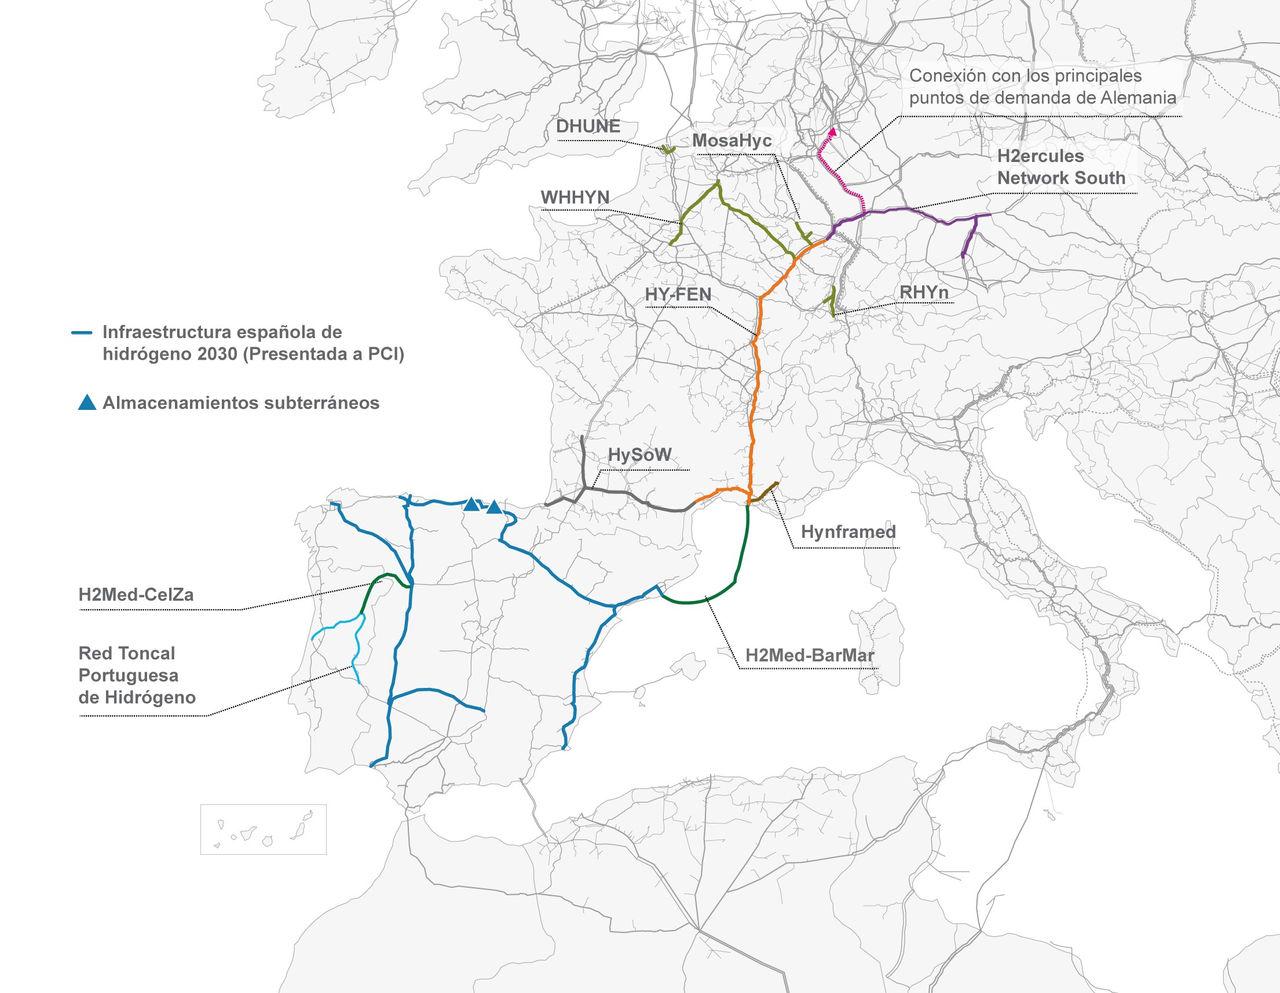 Mapa visión europea de la red de hidrógeno para 2030